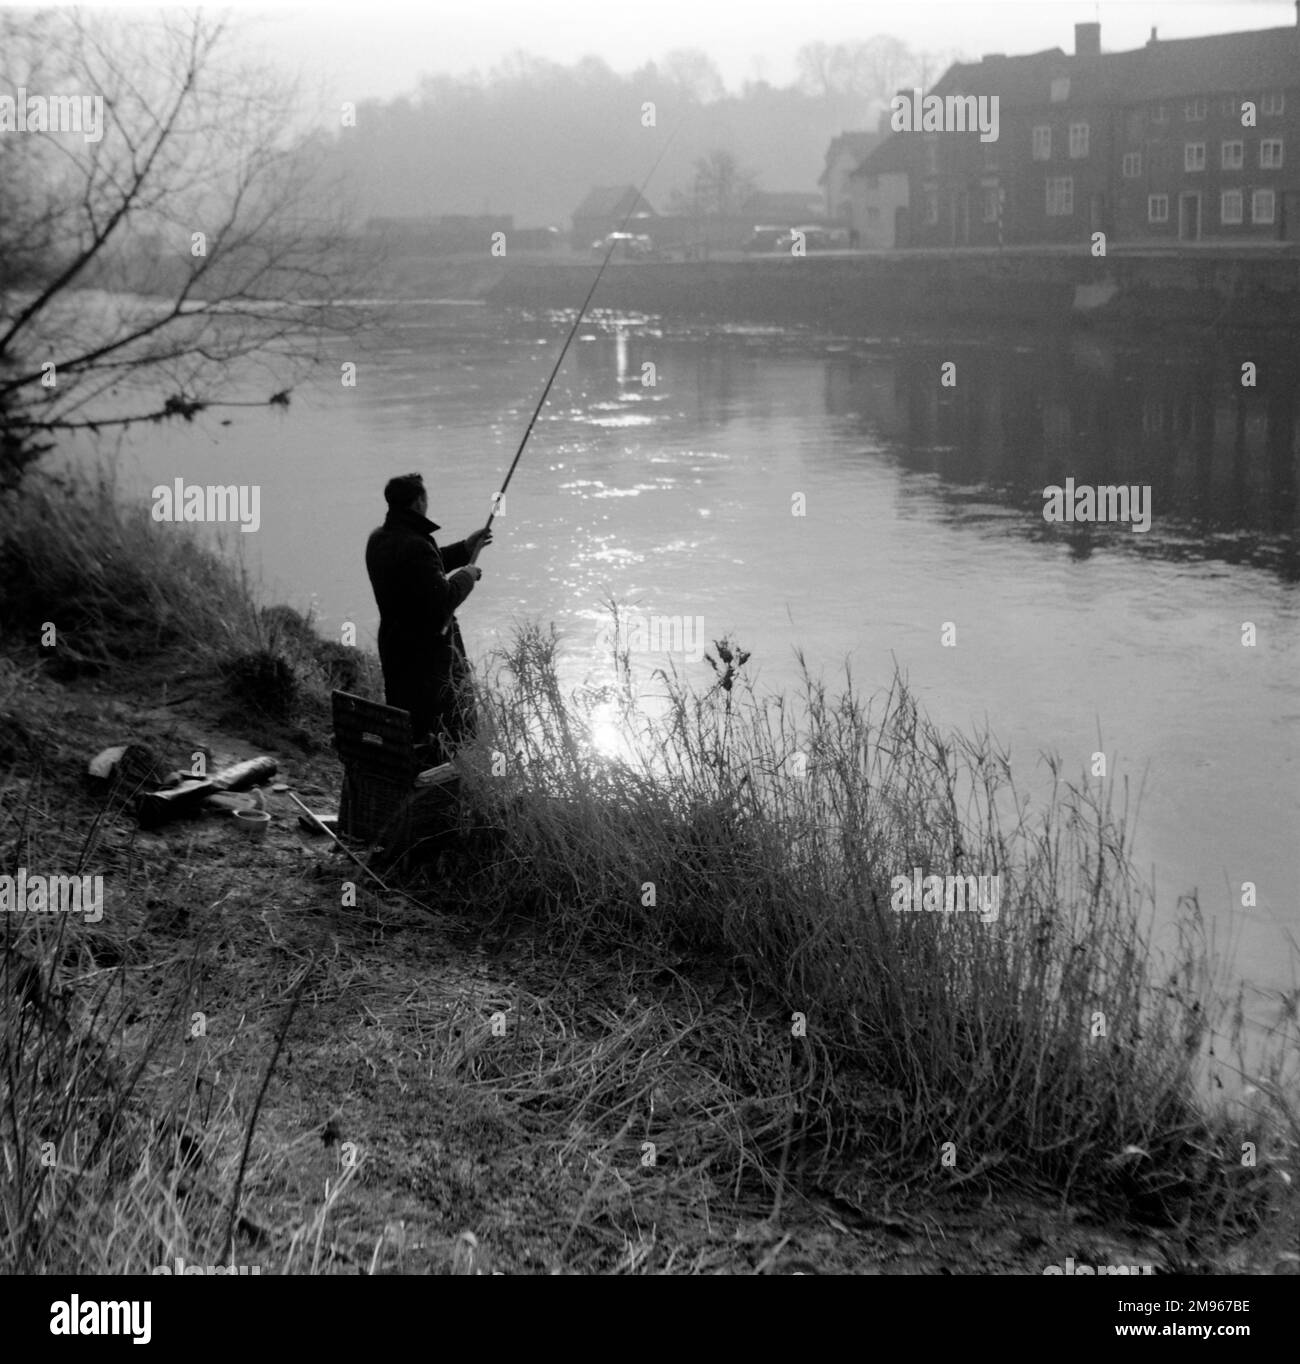 Un pescatore lancia la sua linea nel fiume Severn nella luce misteriosa del mattino a Bewdley, Worcestershire. Fotografia di Norman Synge Waller Budd Foto Stock